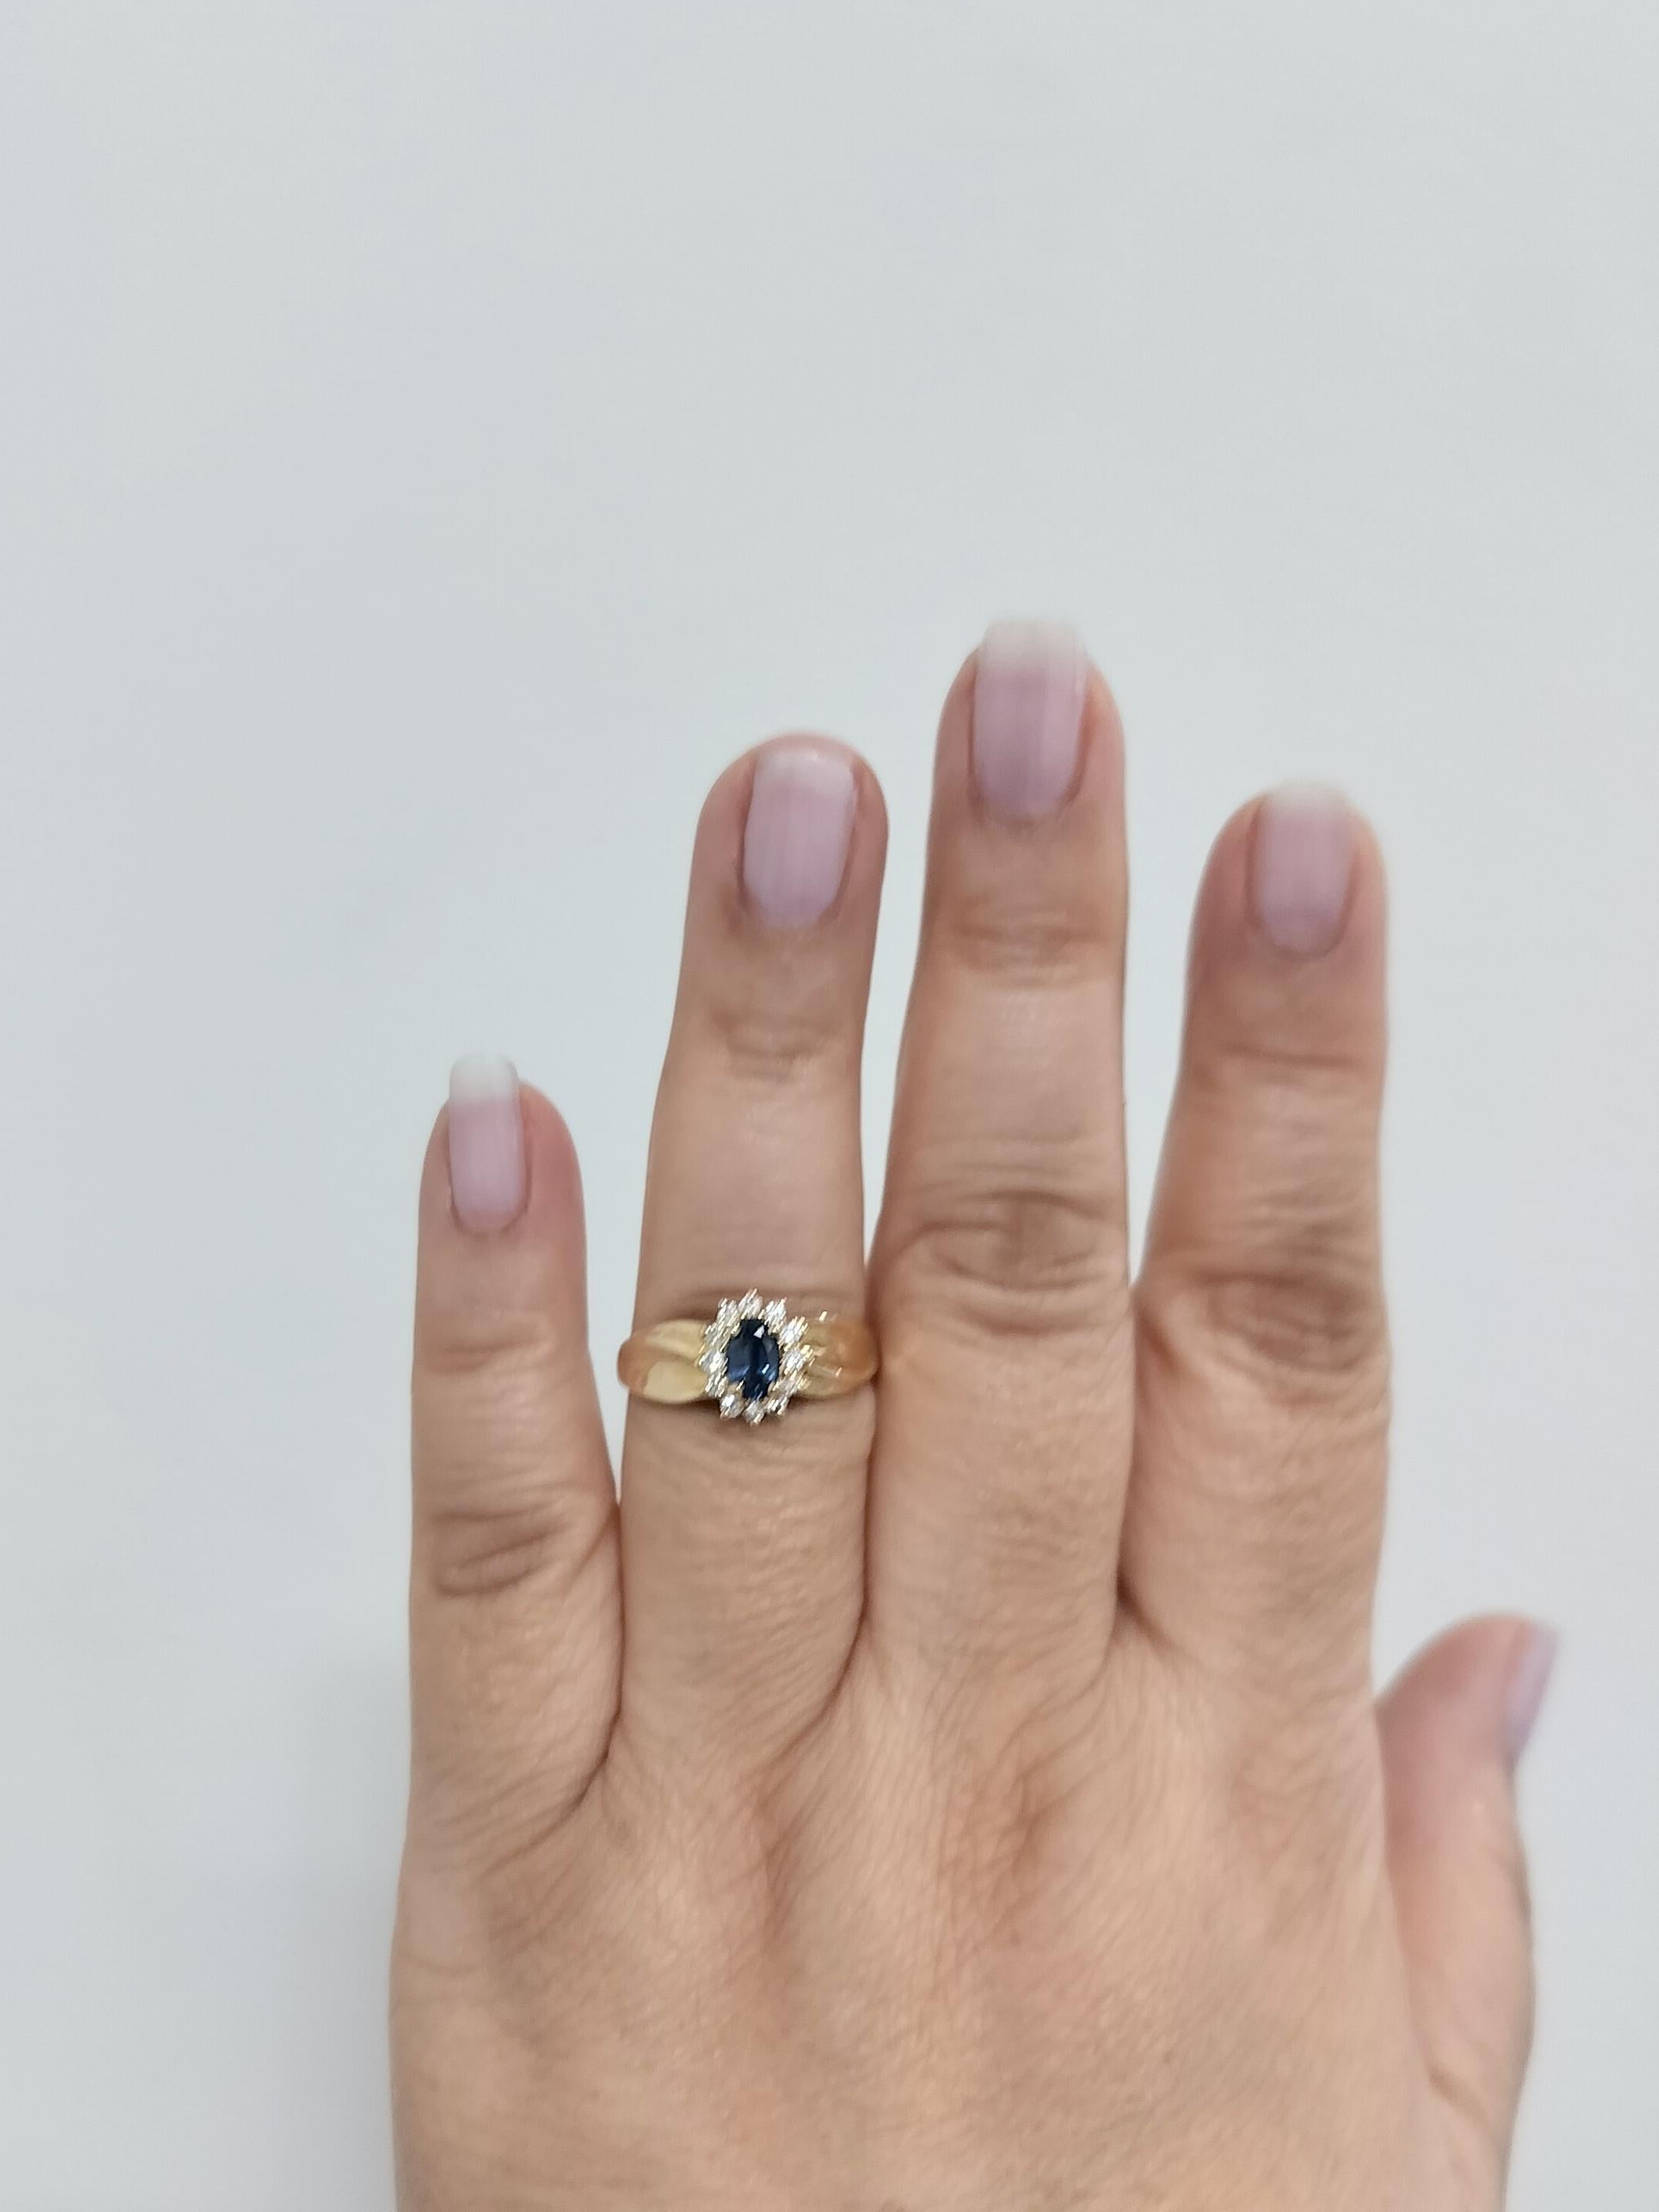 Magnifique saphir bleu ovale de 0,50 ct. avec des diamants blancs ronds de 0,25 ct. de bonne qualité.  Fabriqué à la main en or jaune 14k.  Bague taille 9.25.